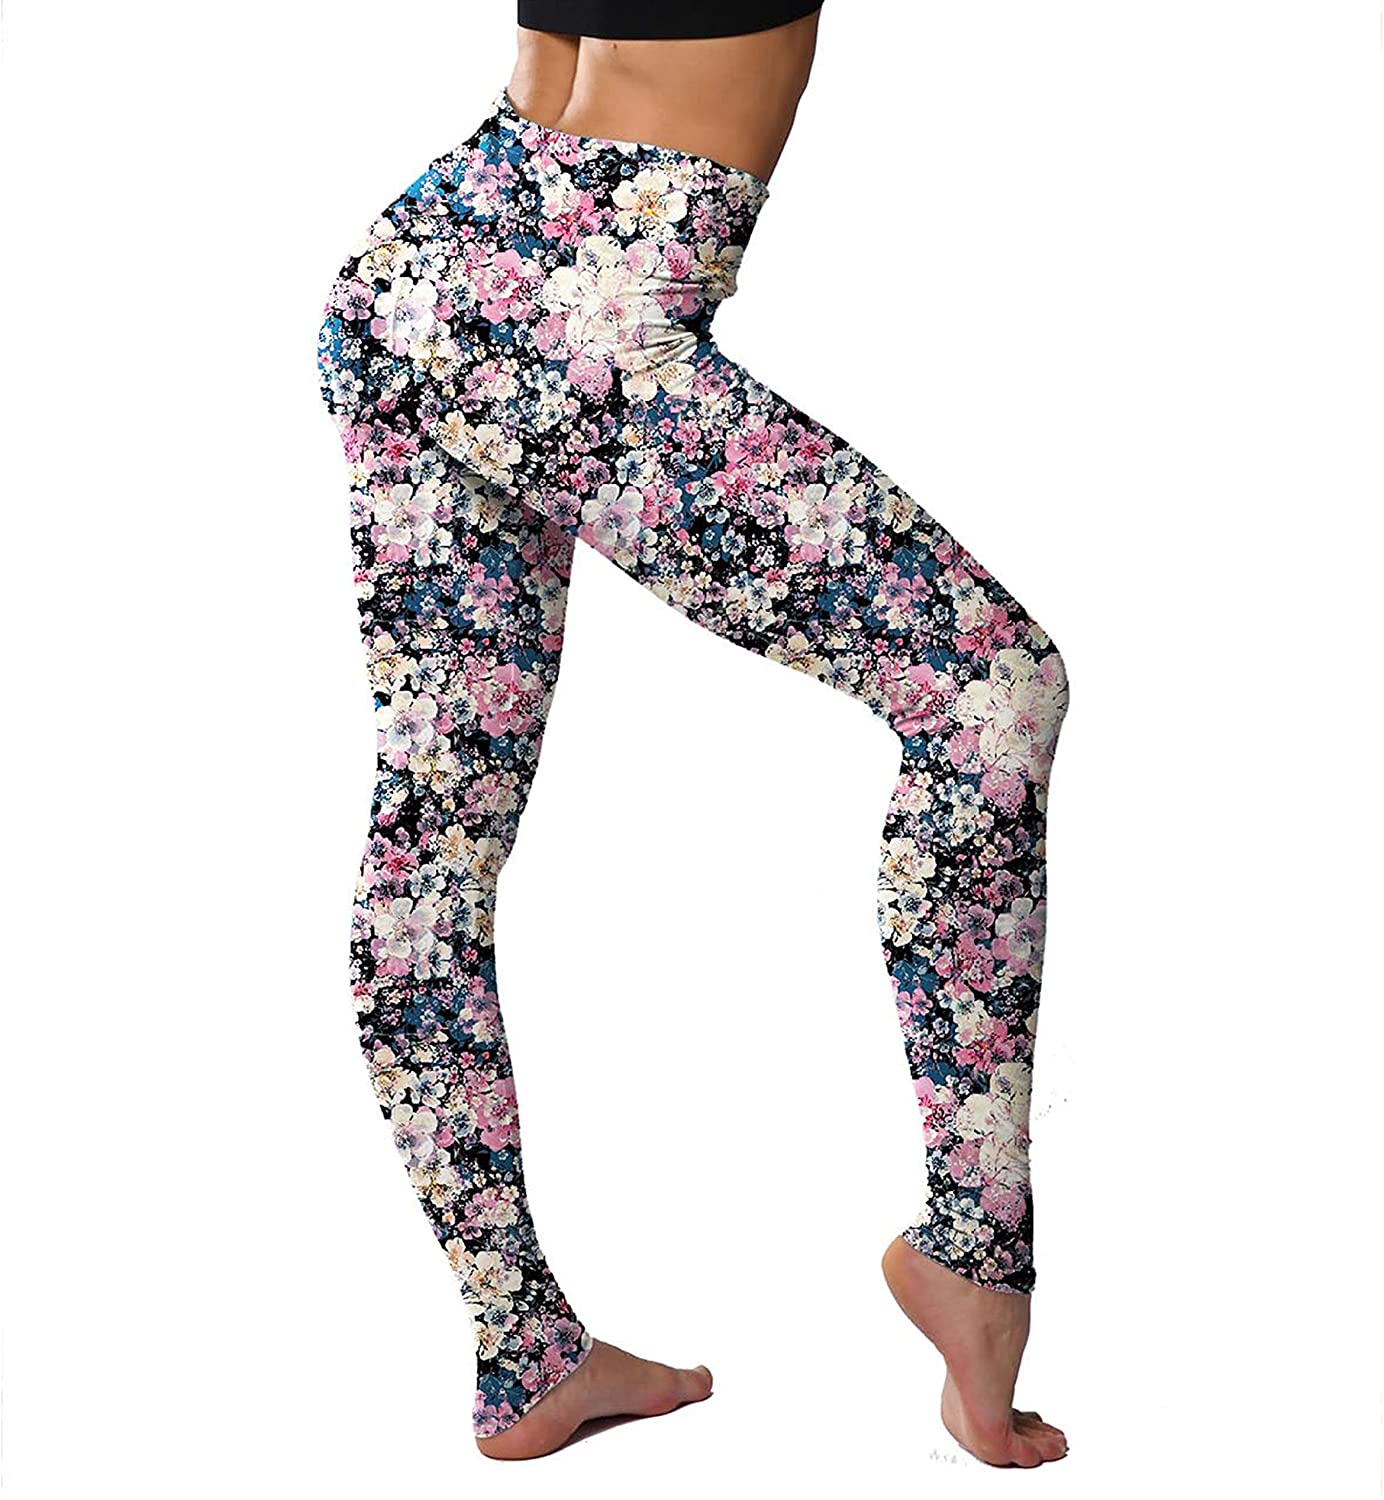 Svogue vaner Leggings for Women Printed High Waist Ultra Soft Yoga